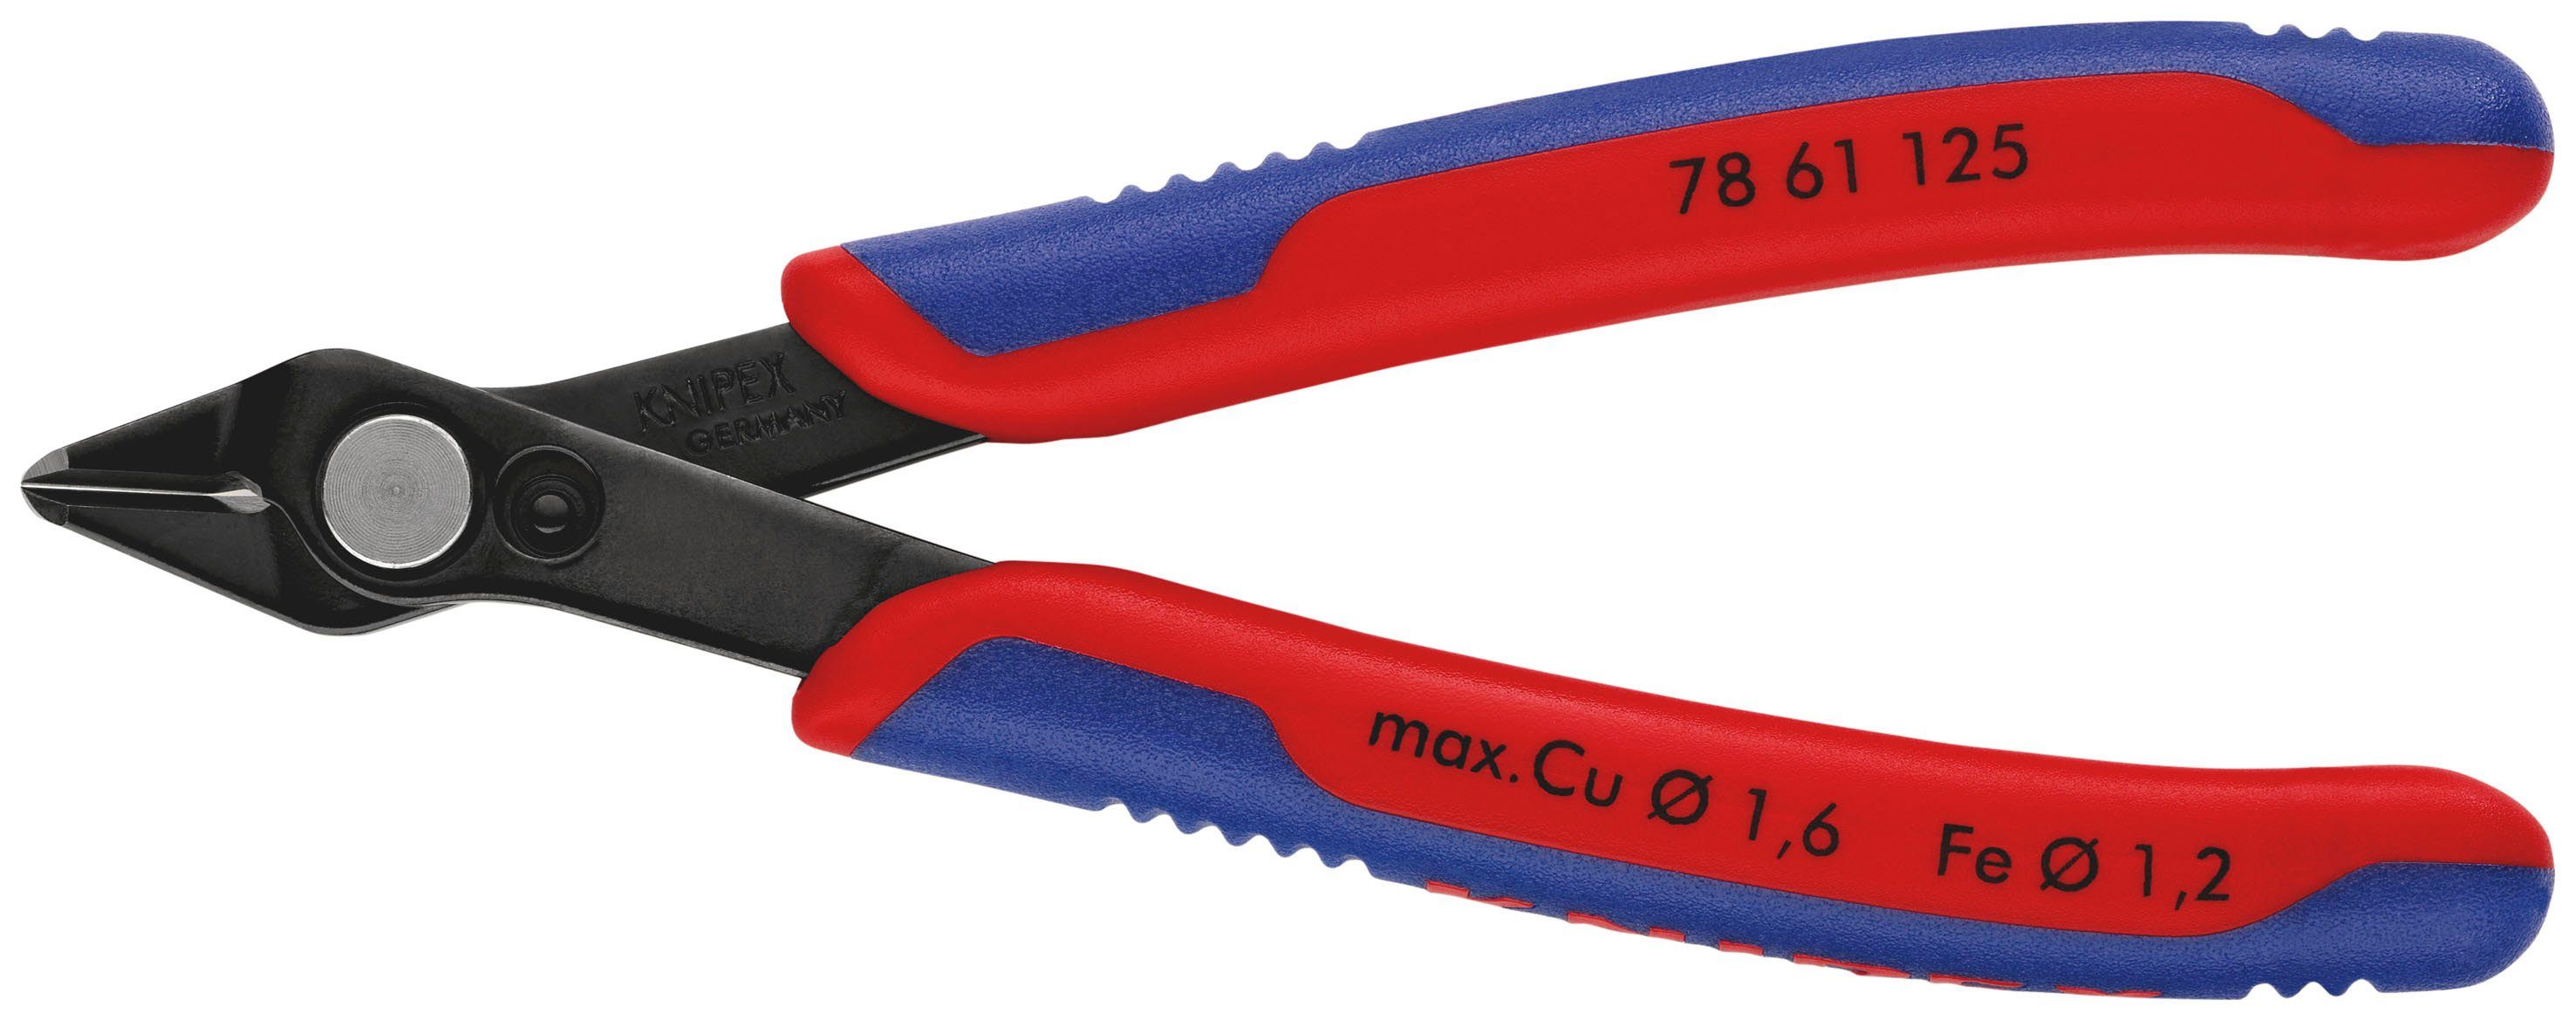 Knipex Seitenschneider 78 61 125 Electronic Super Knips®, 1-tlg., brüniert, mit Mehrkomponenten-Hüllen 125 mm | Zangen